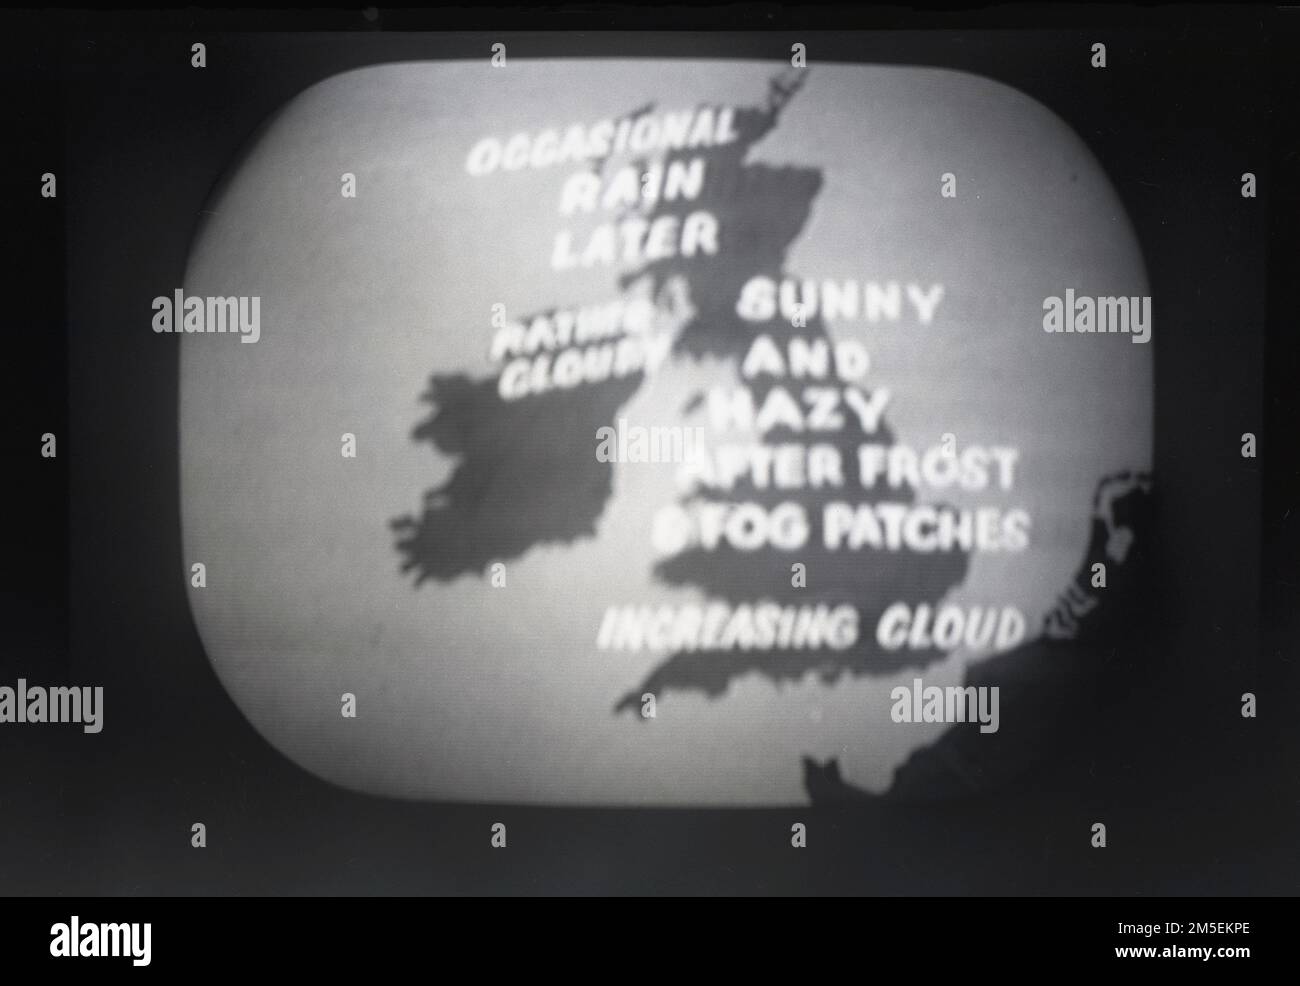 1957, storico, una televisione BBC in-visione meteo o previsioni del tempo. Sullo schermo una semplice mappa del Regno Unito coperta con script che mostra quattro titoli;. Irlanda del Nord, piuttosto nuvoloso, Scozia, pioggia occasionale più tardi, Sunny & Hazy dopo Frost & Fog patch sul Centro Inghilterra e sul Sud Inghilterra, aumentando il cloud. Foto Stock